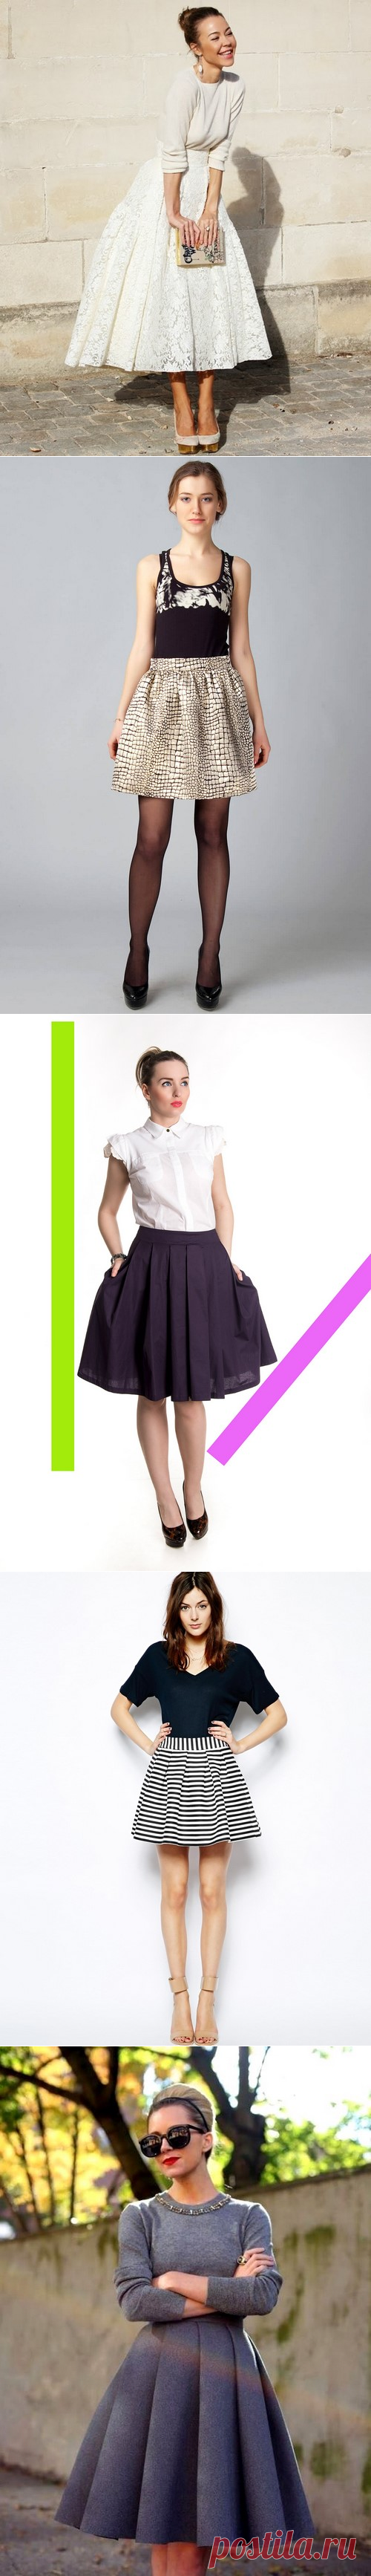 Юбка колокол - модные юбки колокол короткие, миди, длинные, юбка колокол - выкройка | topxstyle.ru